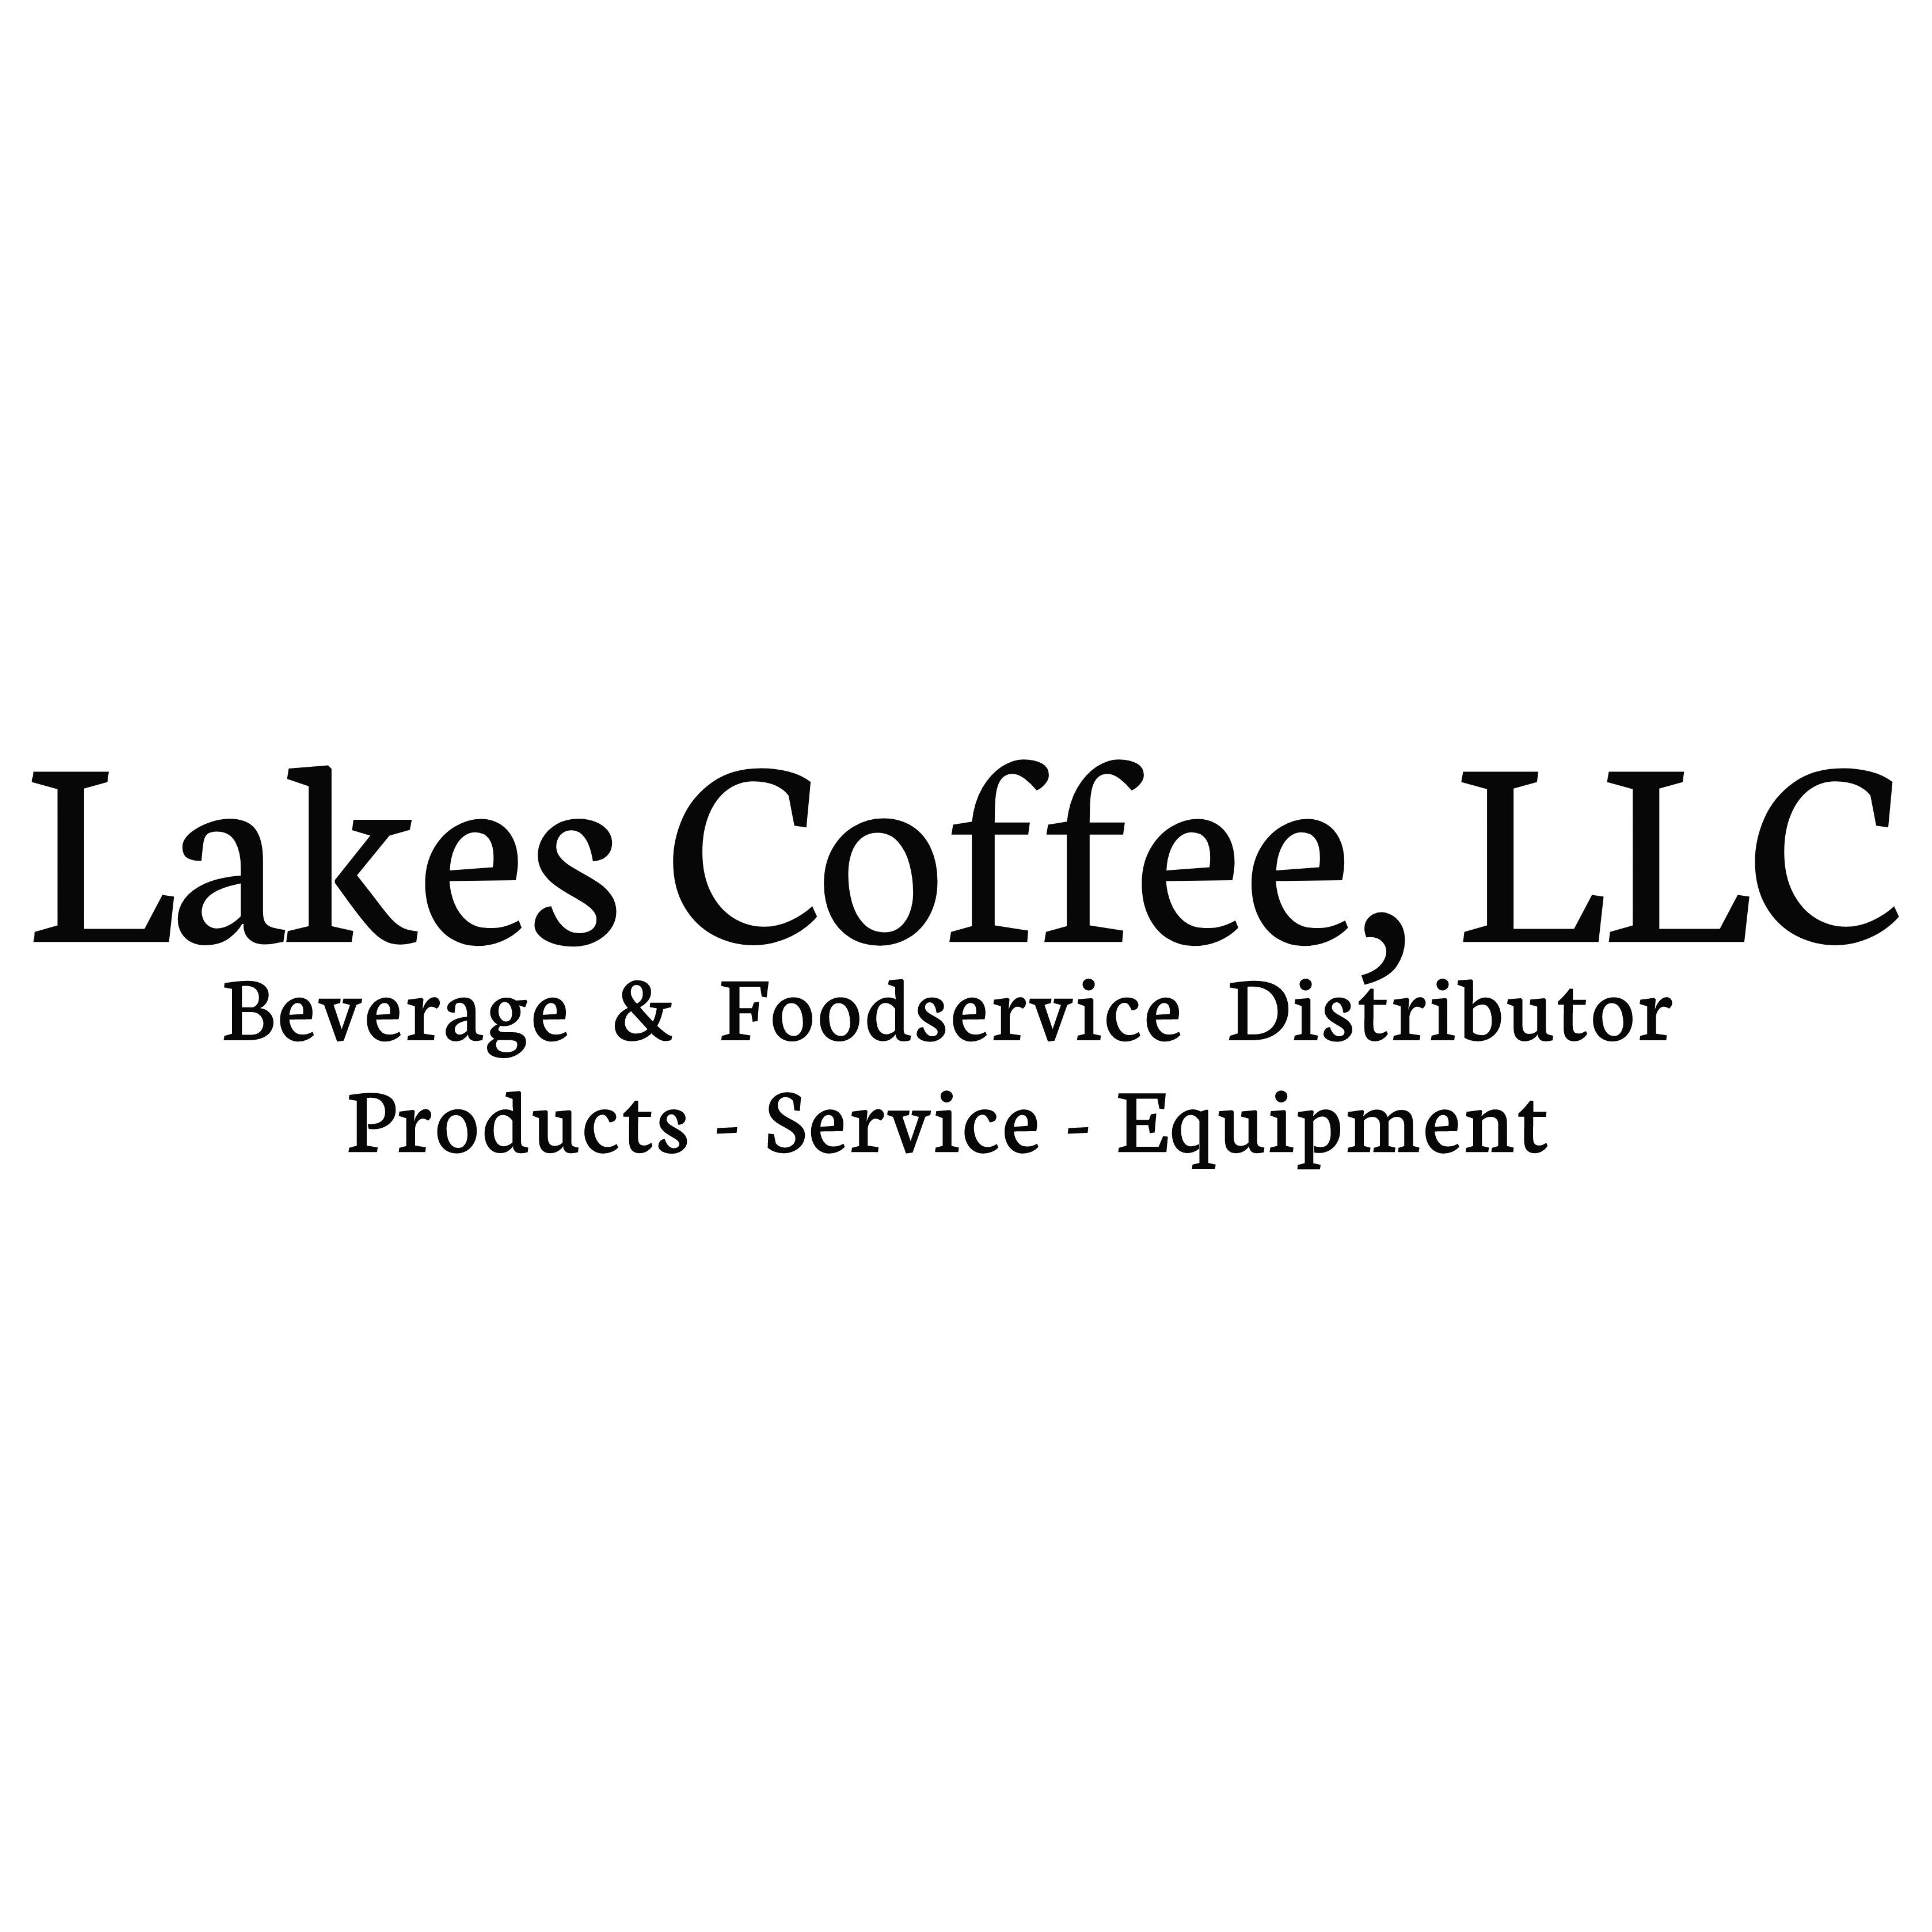 Lakes Coffee, LLC.